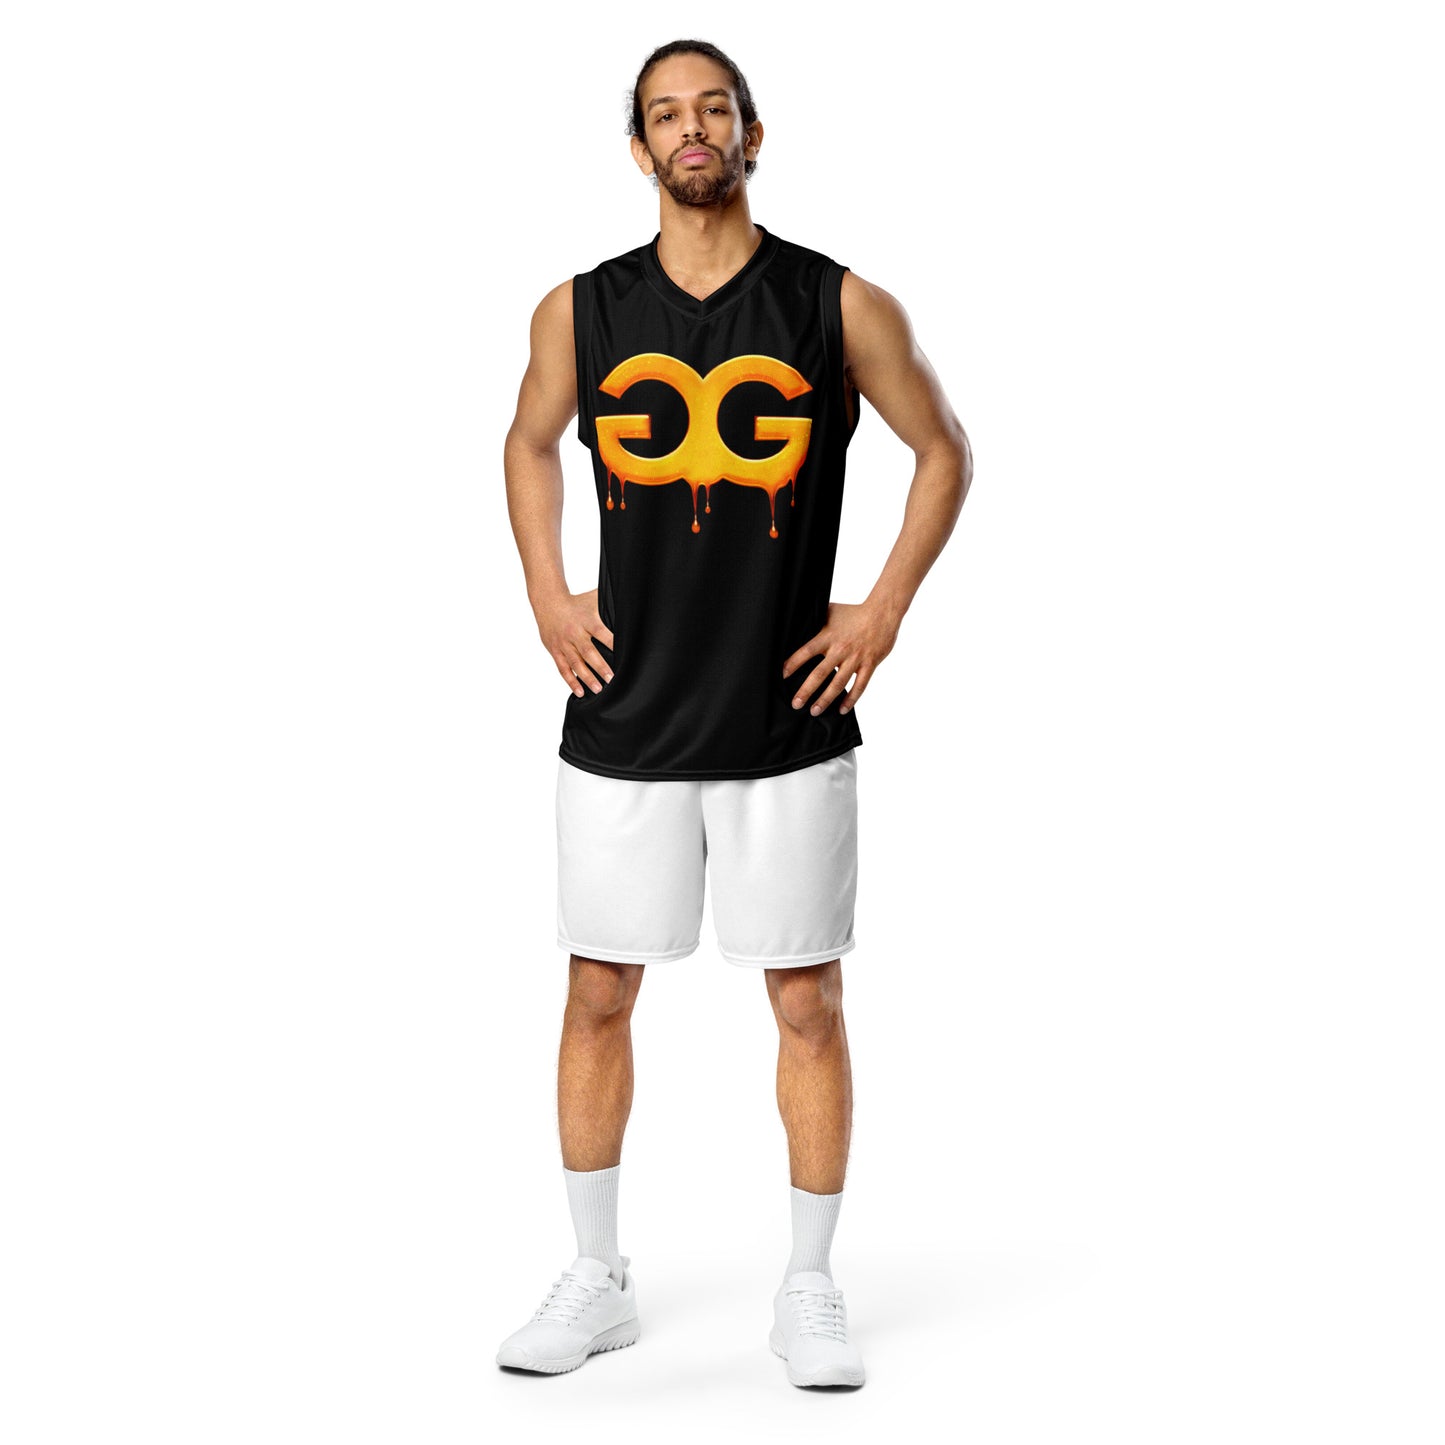 Gummy Gang unisex basketball jersey